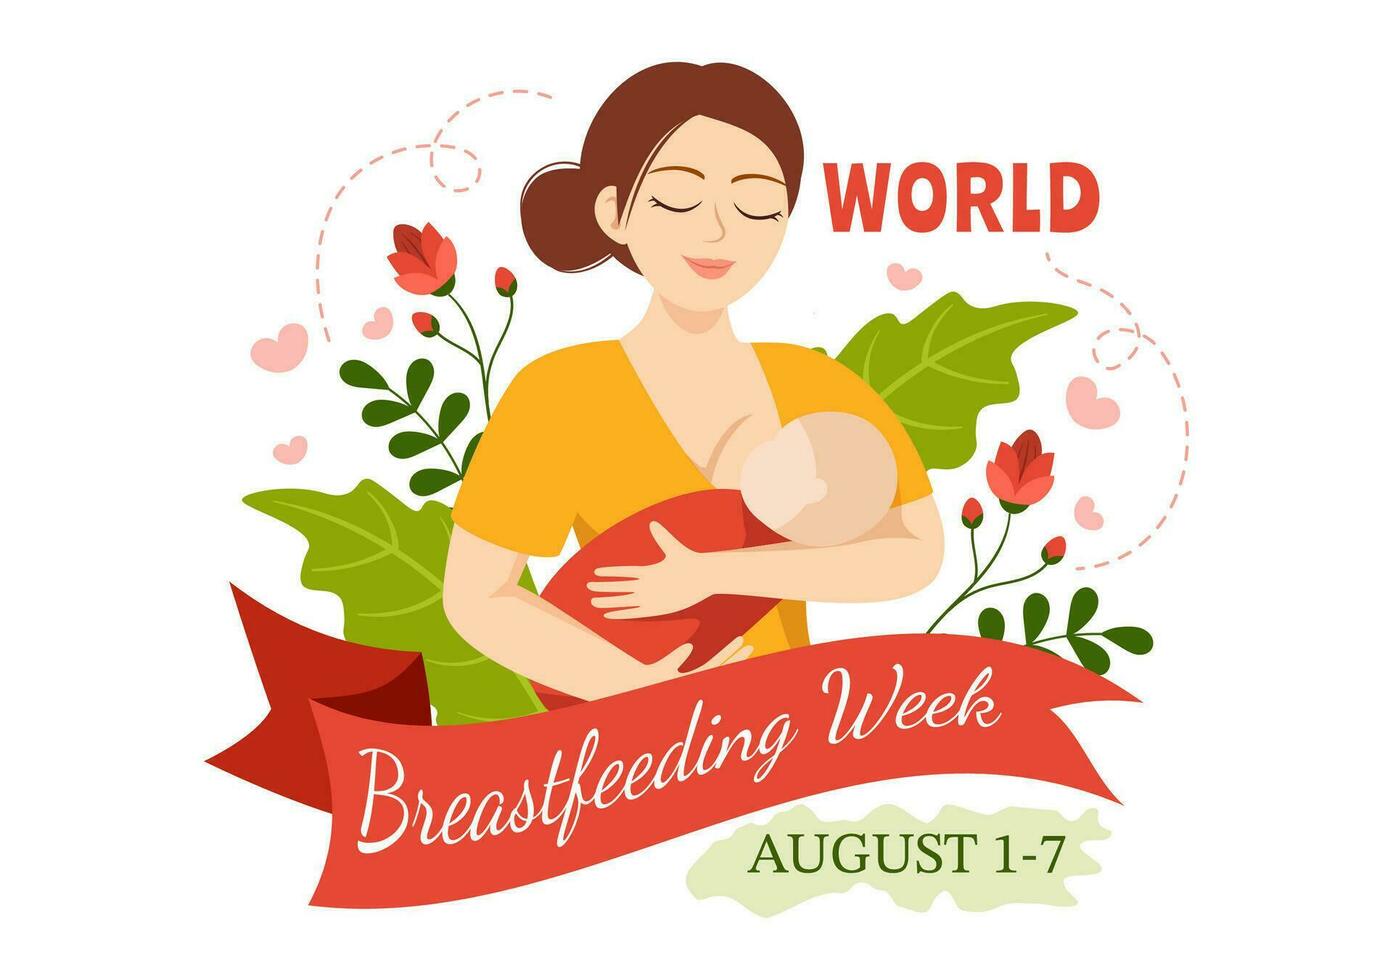 monde allaitement maternel la semaine vecteur illustration de alimentation de bébés avec Lait de une les femmes Sein dans plat dessin animé main tiré modèles